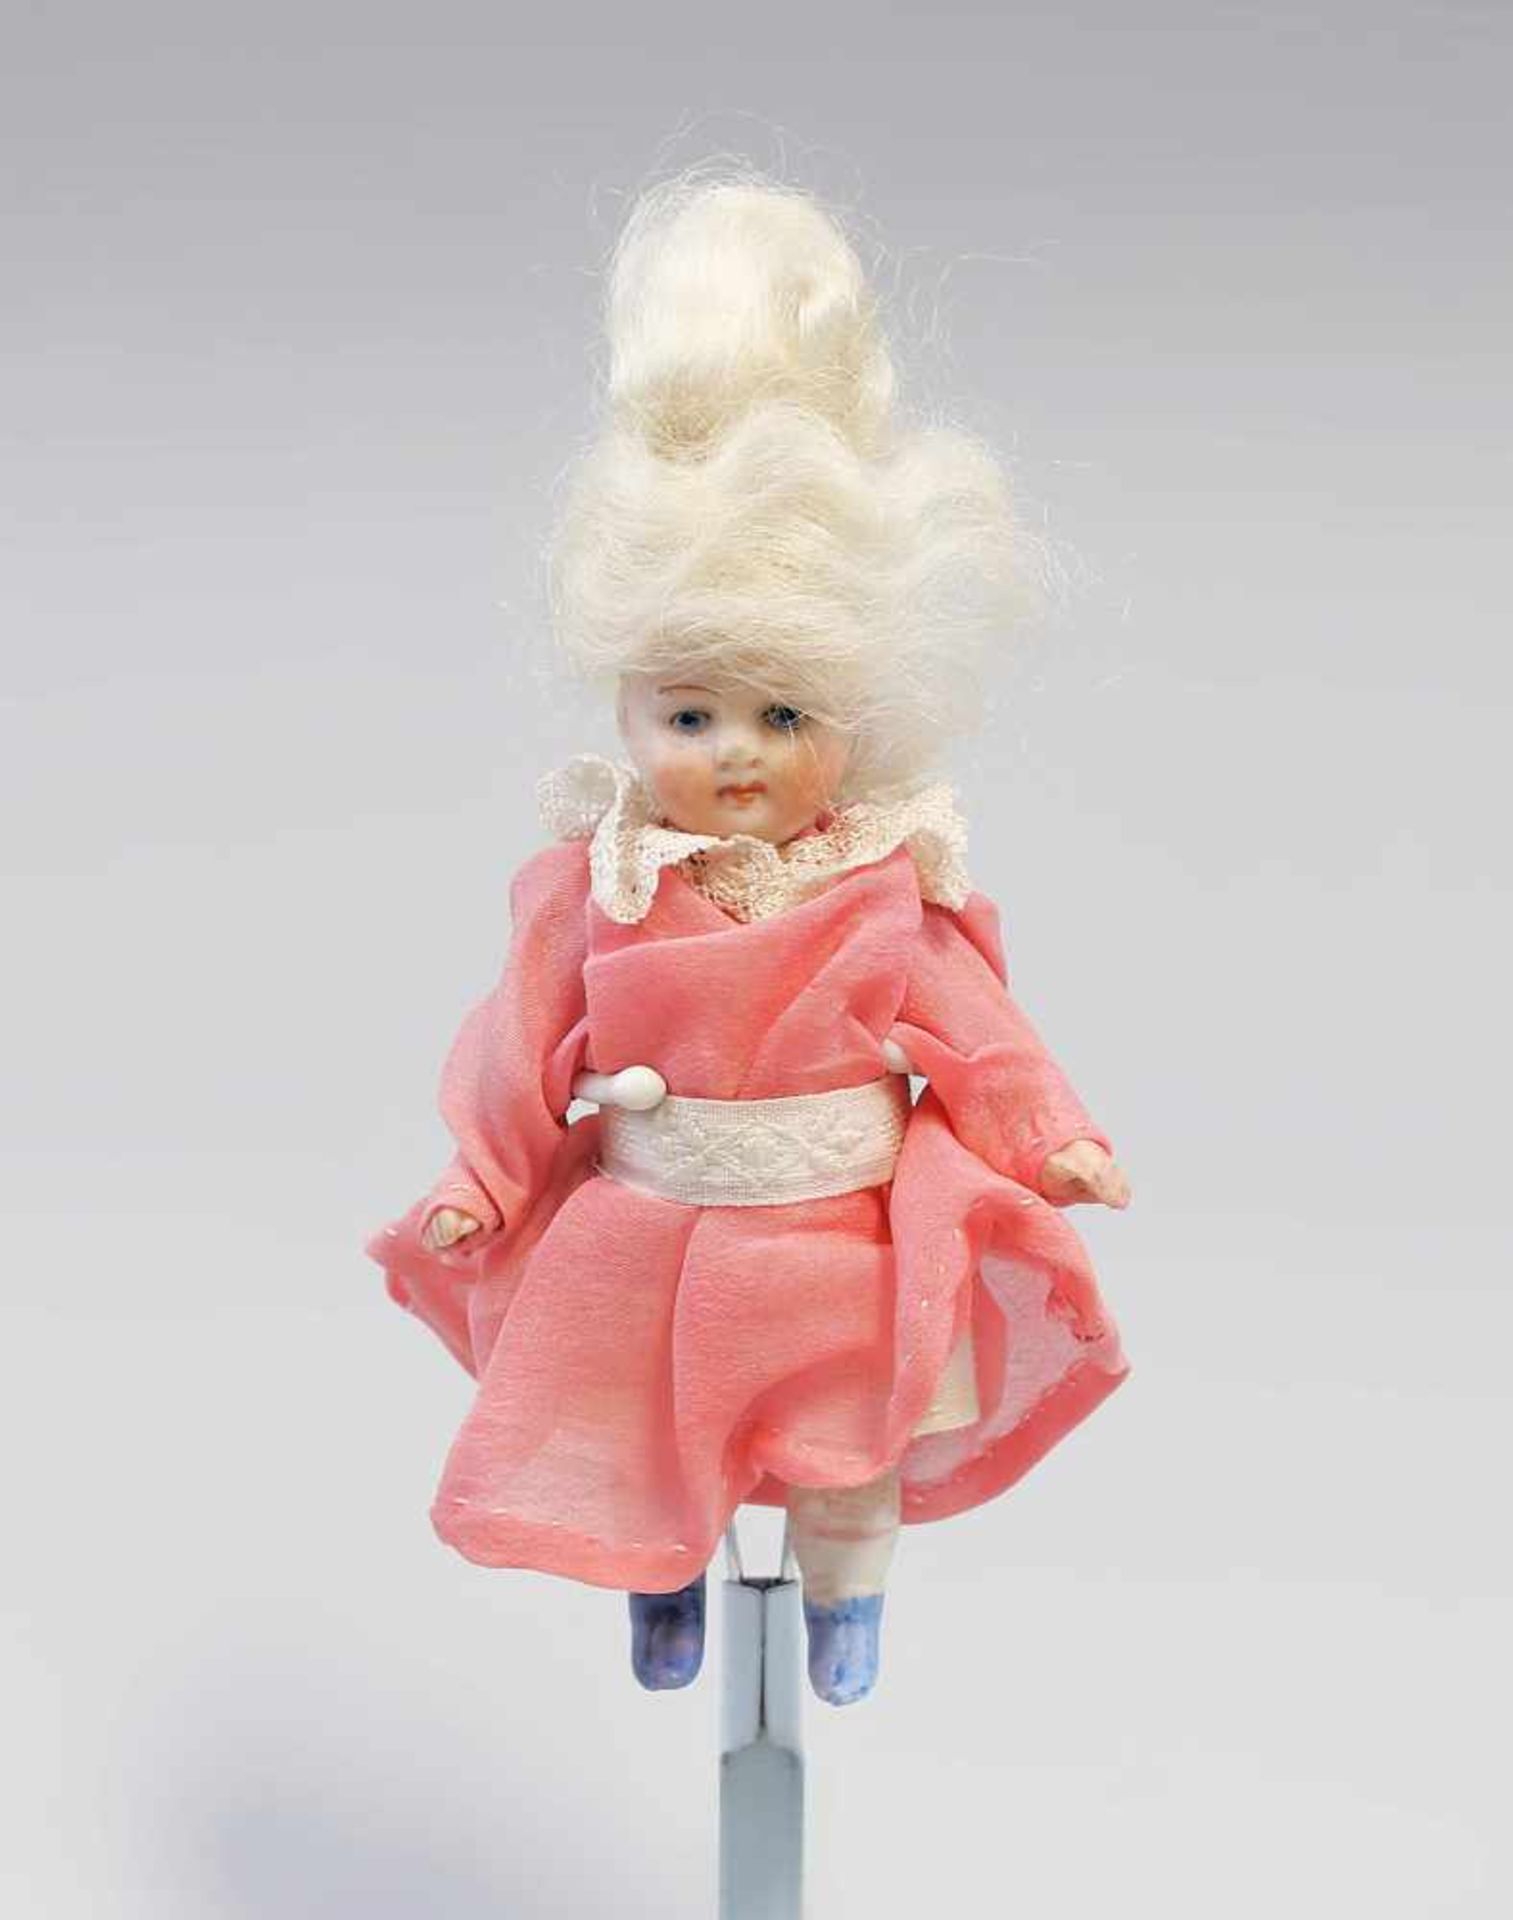 Ganzbisquit-Porzellan-Puppenstuben-Puppe um 1900, blonde Perücke, rosa getönte Wangen, Arme und